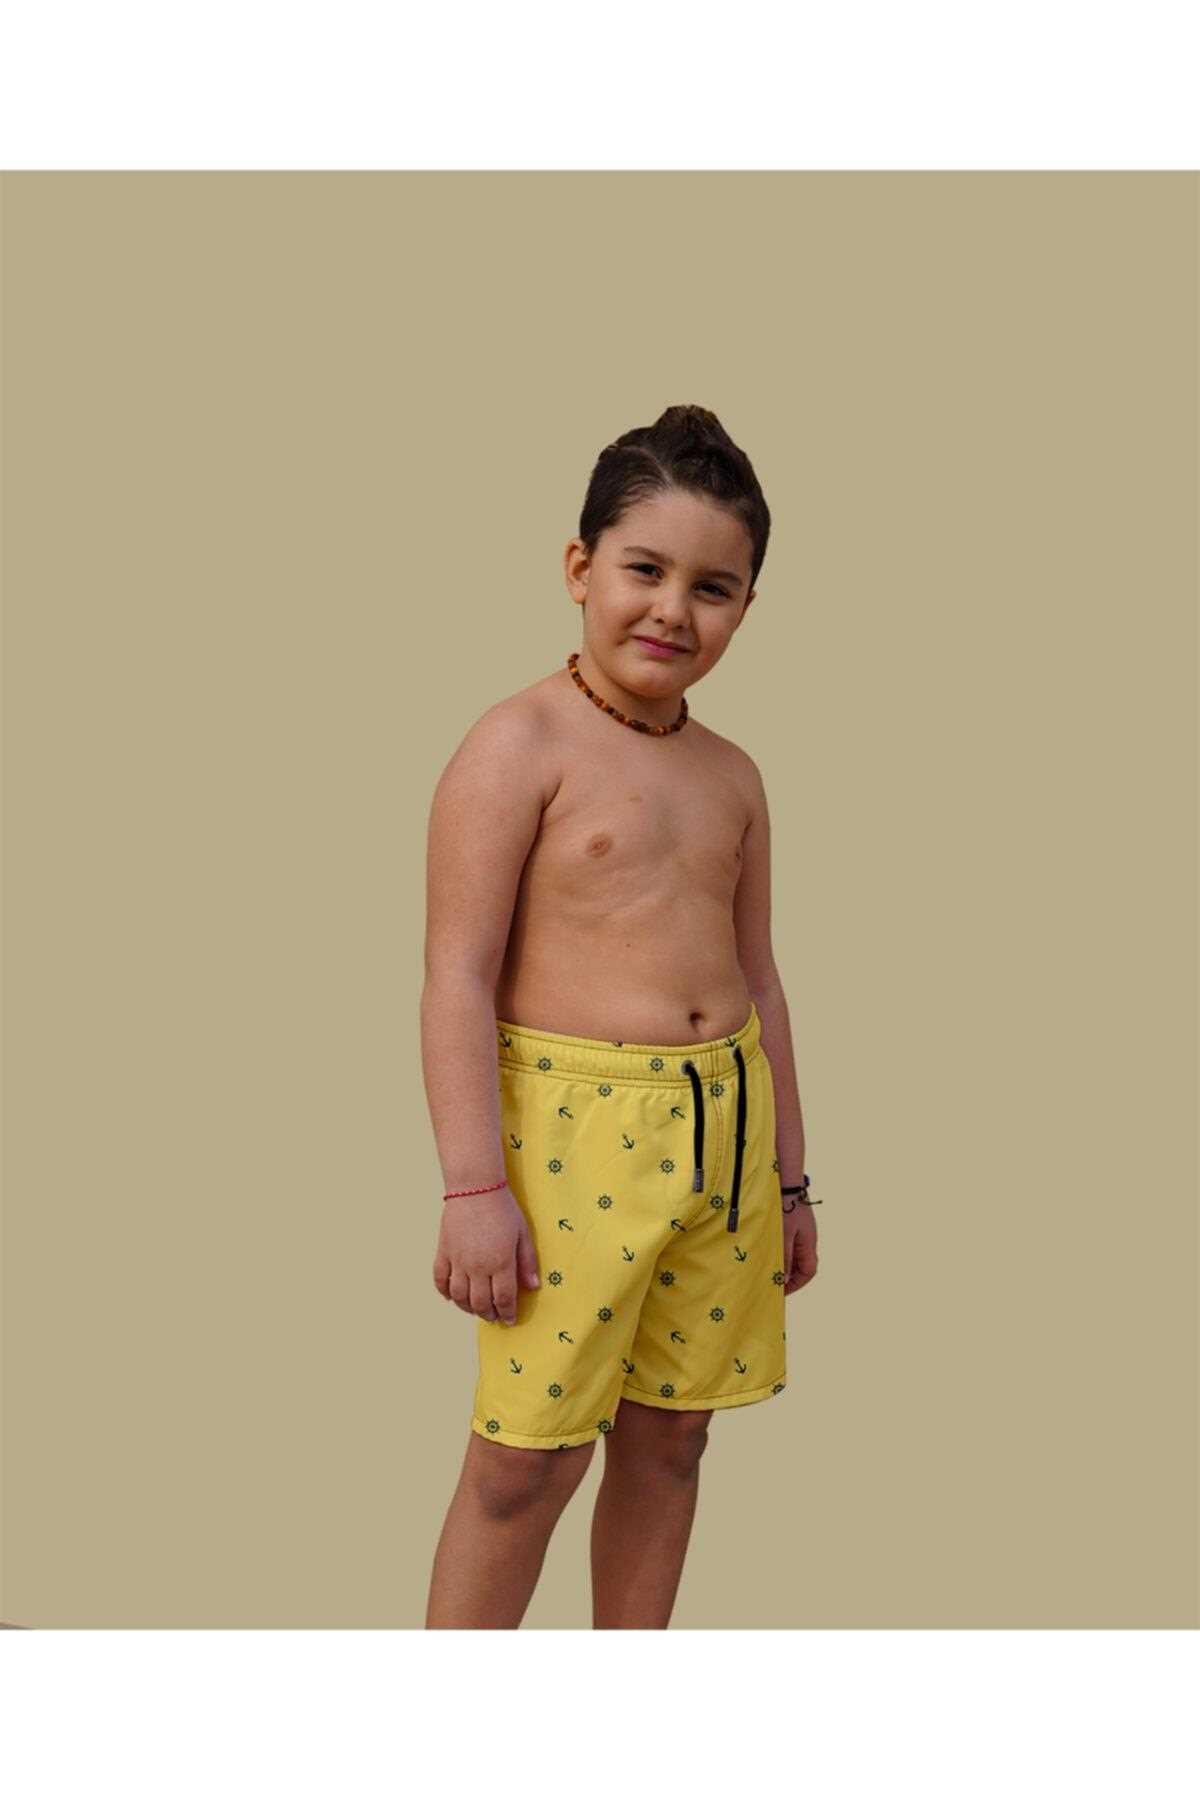 خرید انلاین مایو زیبا پسرانه شیک Miami Beach رنگ زرد کد ty104636070